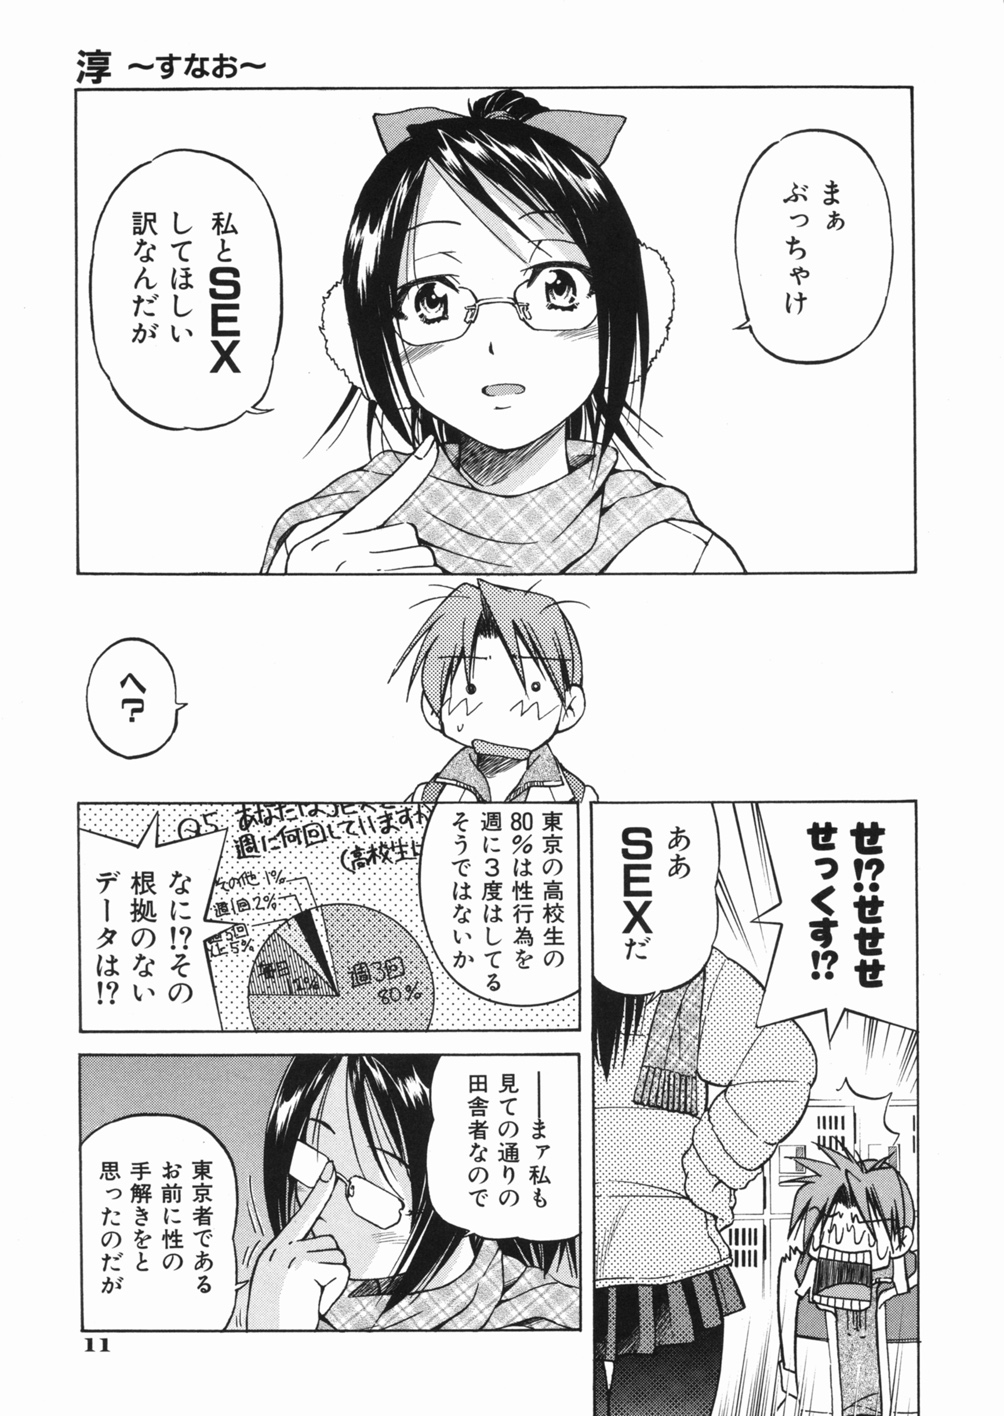 [Inoue Yoshihisa] Sunao page 15 full